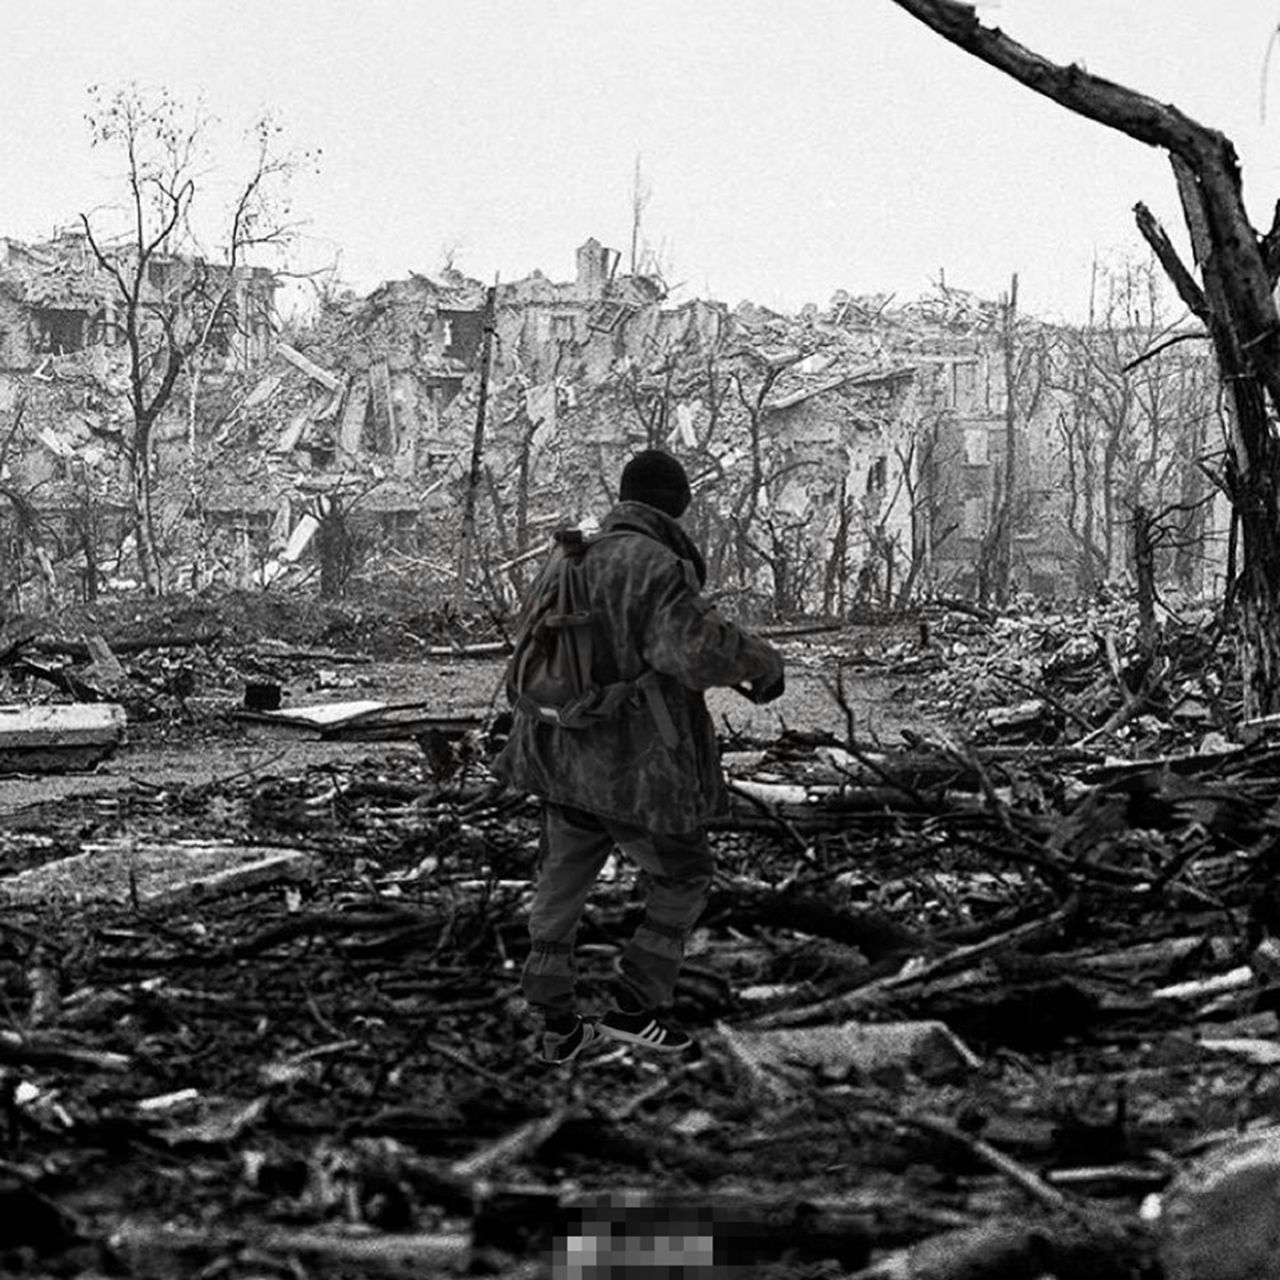 原创12月11日第1次车臣战争爆发1994年:俄军损失5万人靠狂轰滥炸获胜